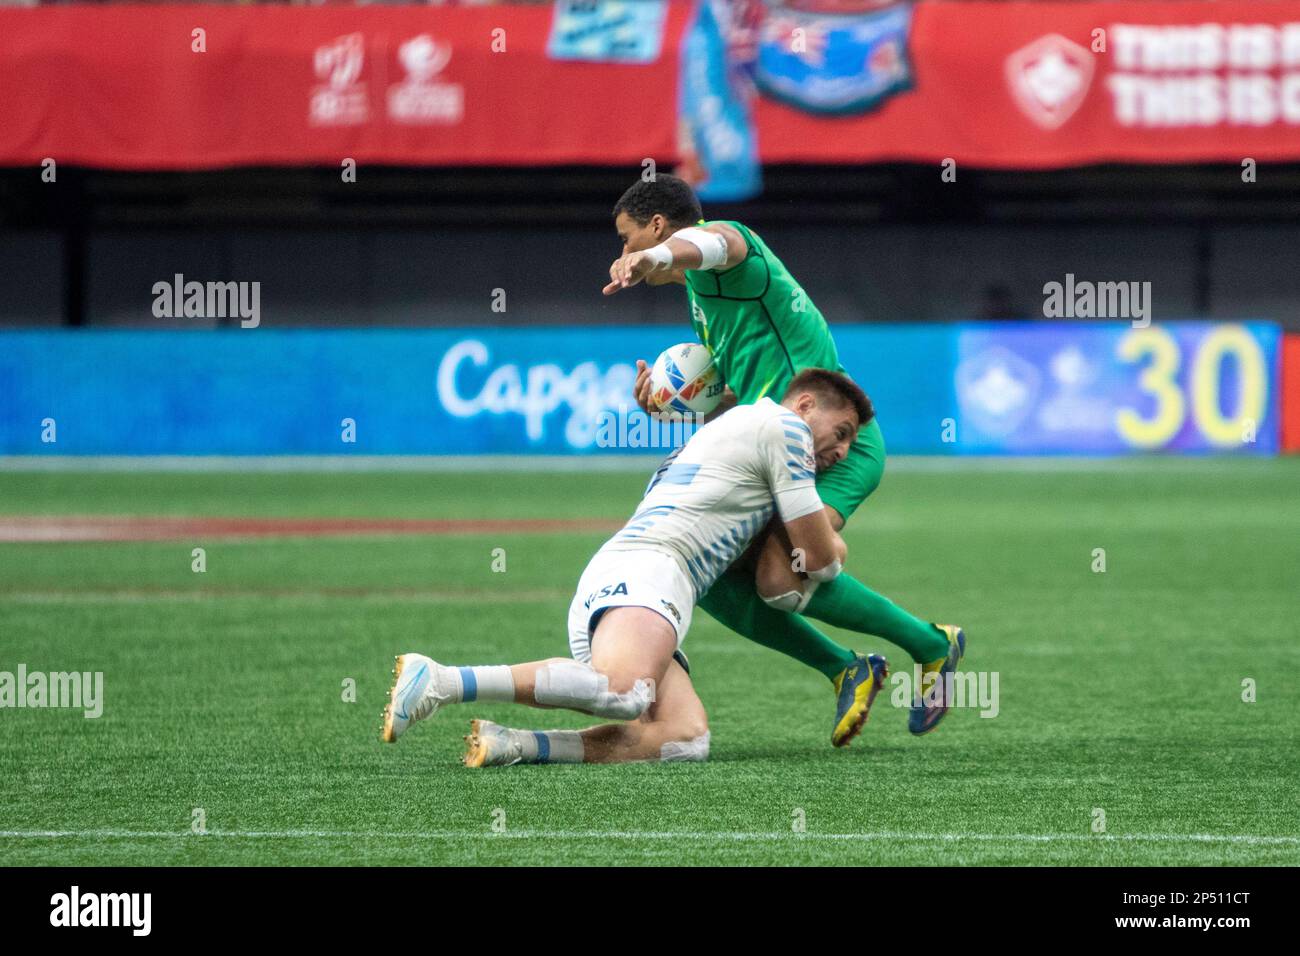 VANCOUVER, CANADA - Marzo 05: Incontro semifinale tra Argentina e Irlanda i 2023 Canada Sevens di rugby al BC Place Stadium di Vancouver, Canada. (Foto di Tomaz Jr/PxImages) Foto Stock